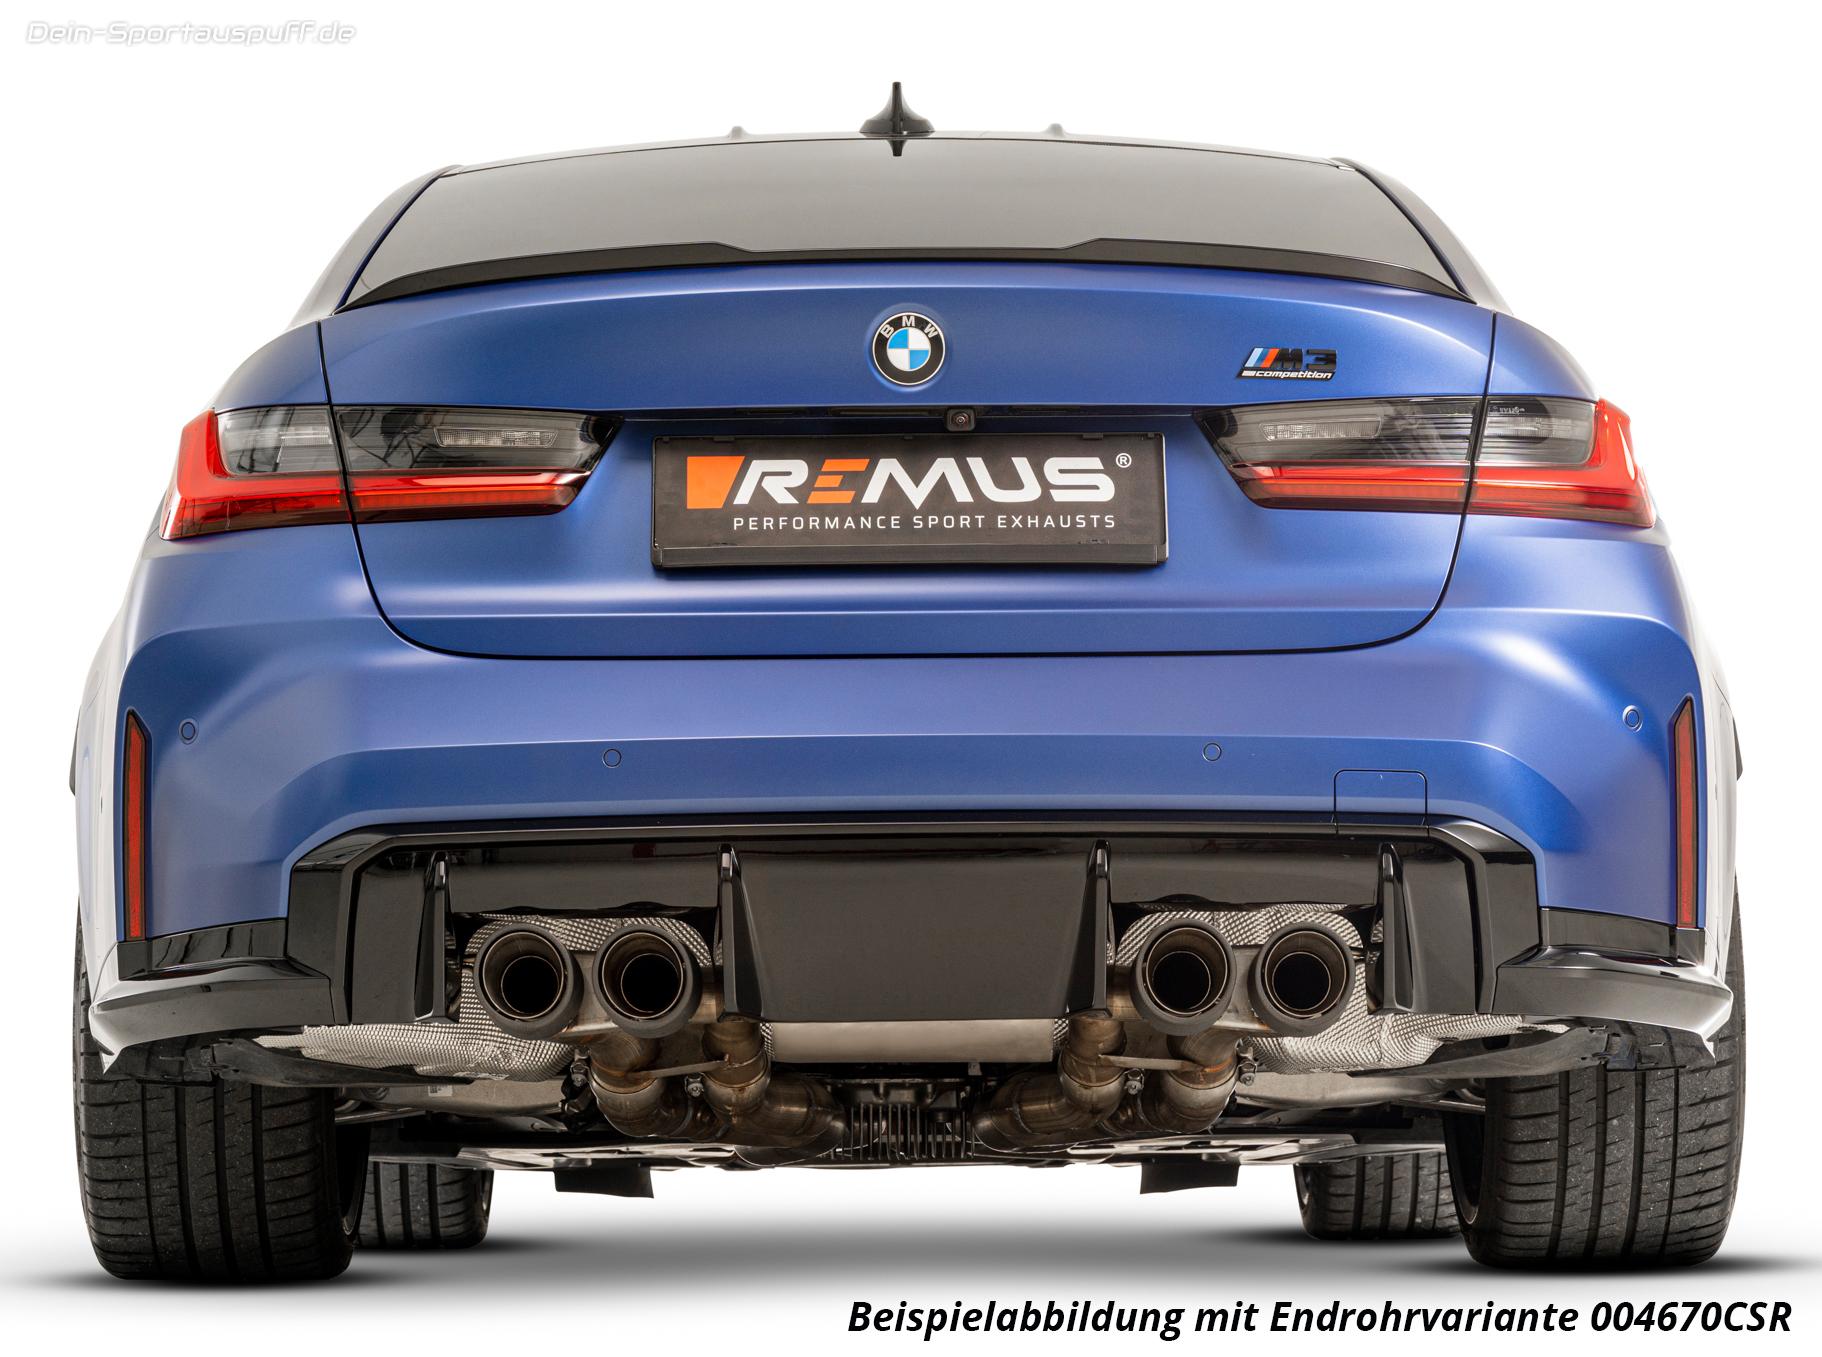 REMUS Sportauspuff BMW - Entdecke unsere besten Abgasanlagen für